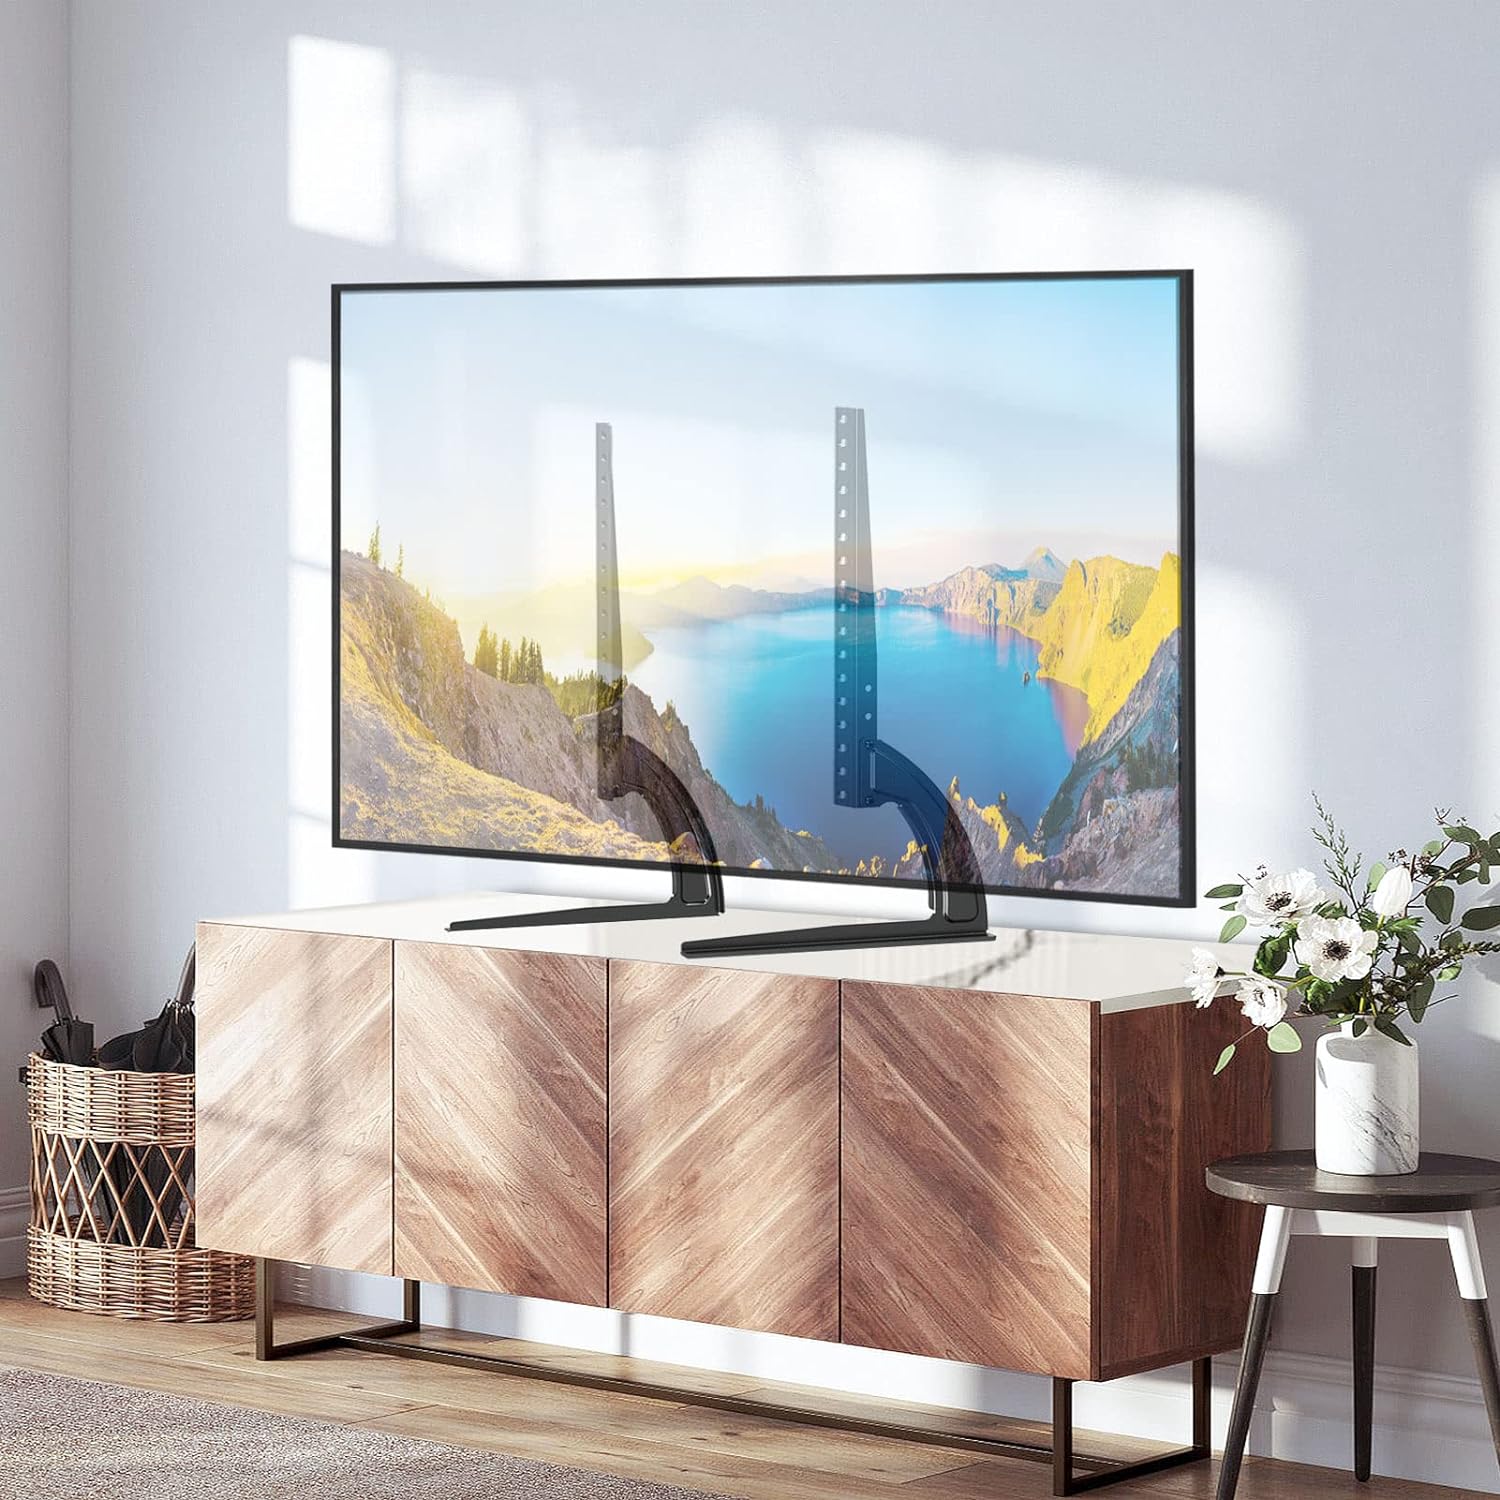 Comprar un soporte de TV - El soporte TV adecuado para cada televisor 